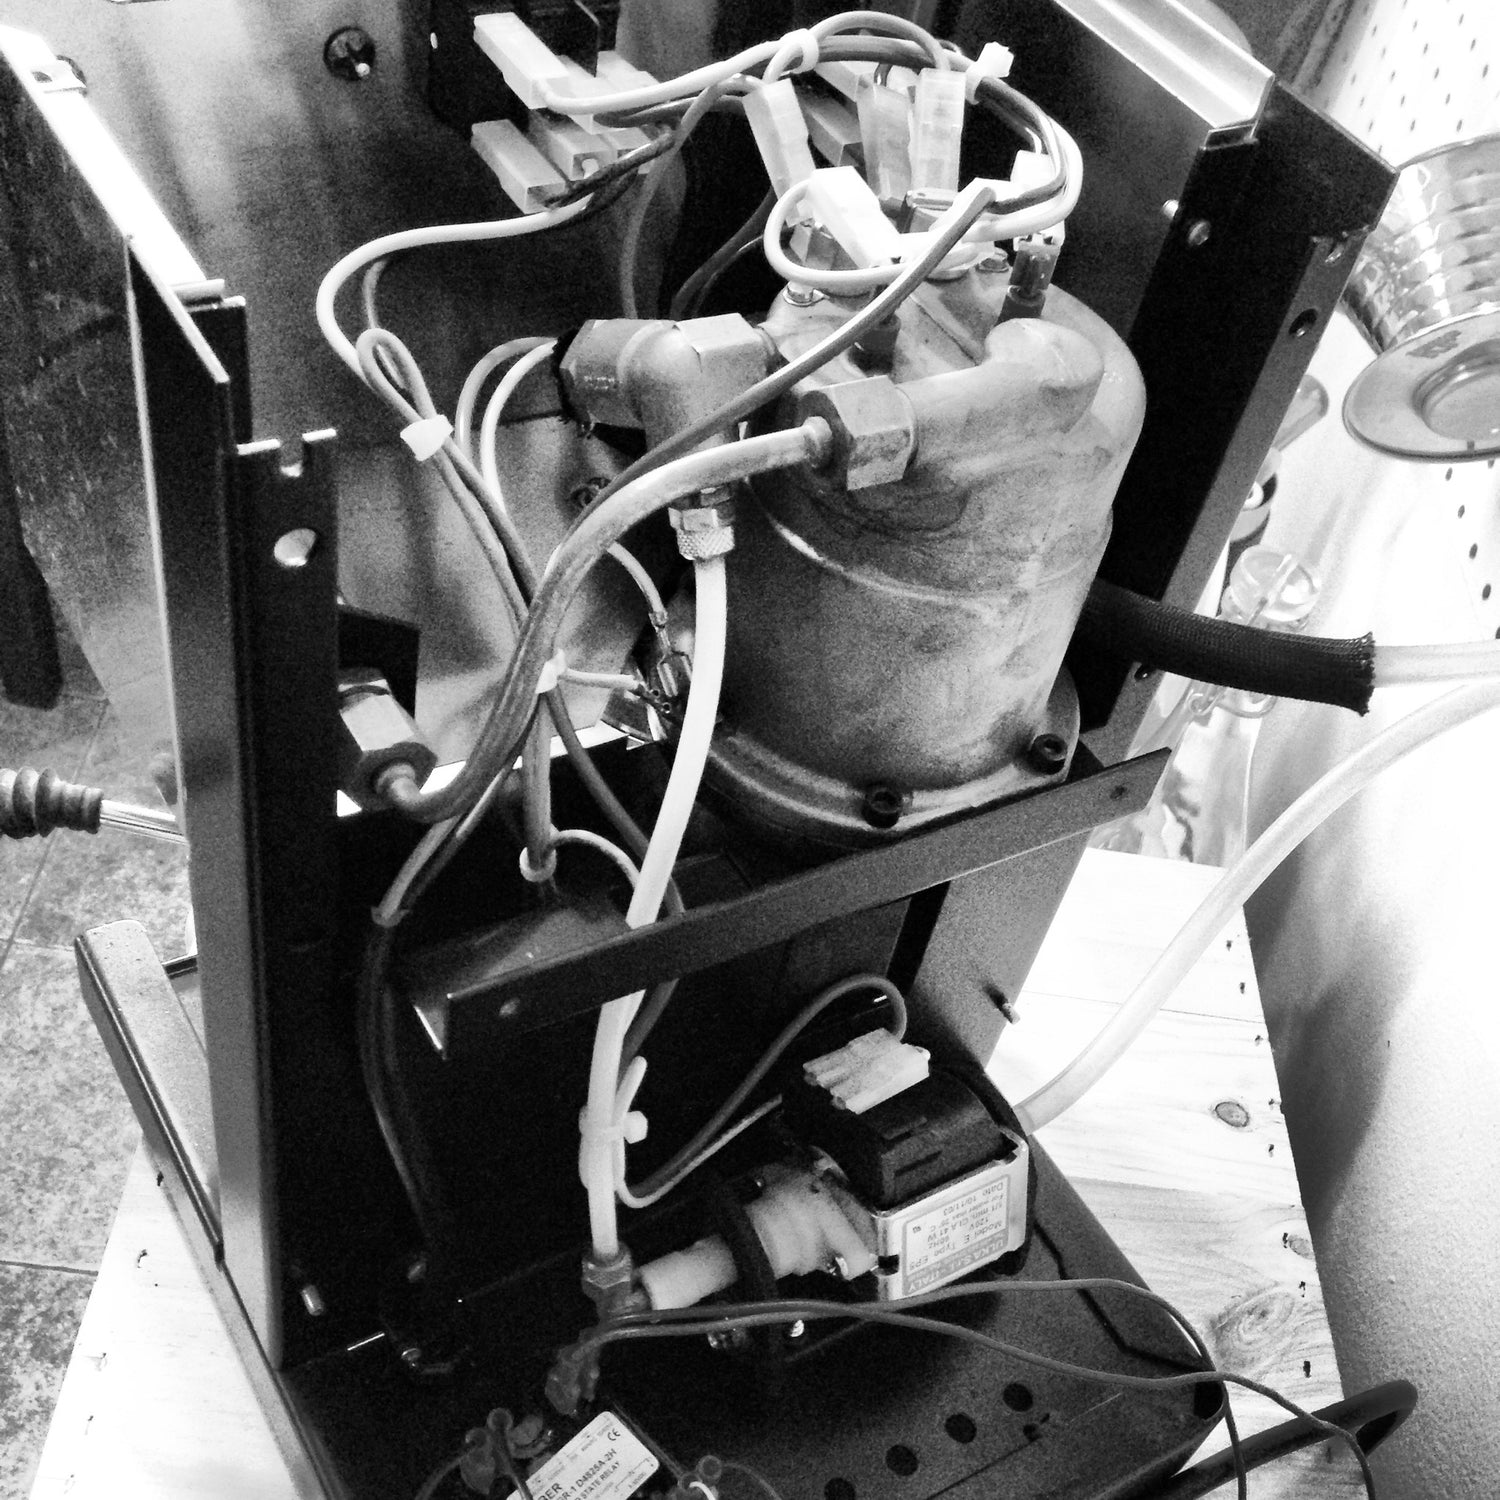 Vignette Coffee tech services fixing a Rancilio Silvia espresso machine